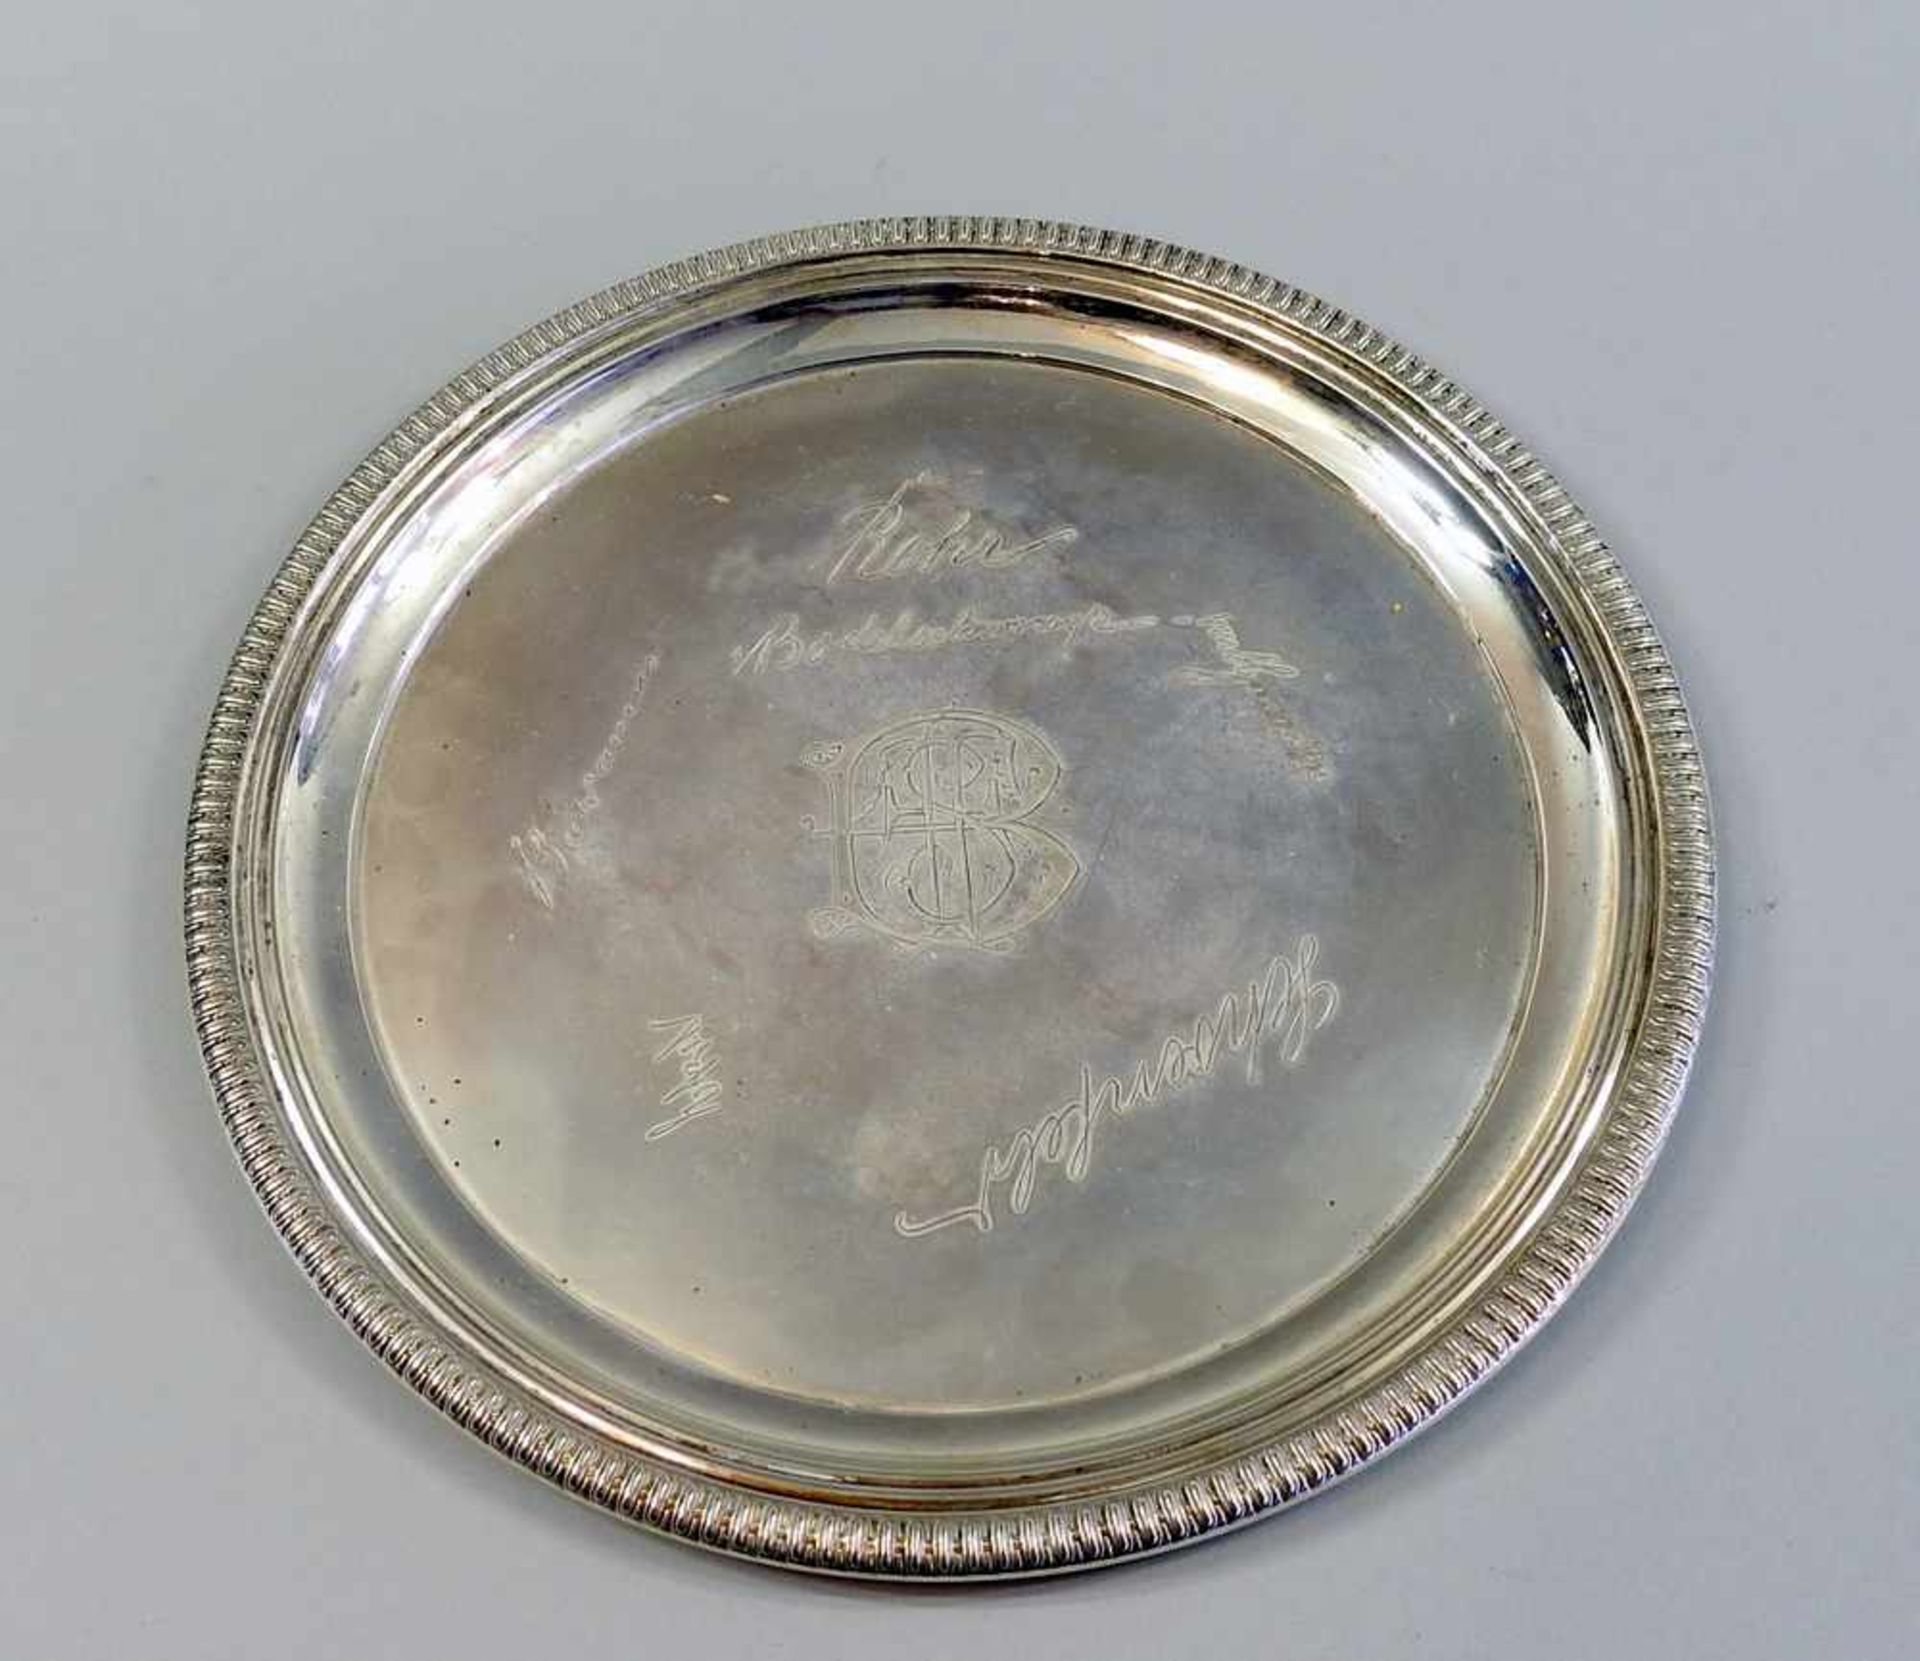 Rundes Silbertablett Silber 800, Punziert mit Halbmond und Krone, hergestellt bei E. Schürmann & Co,